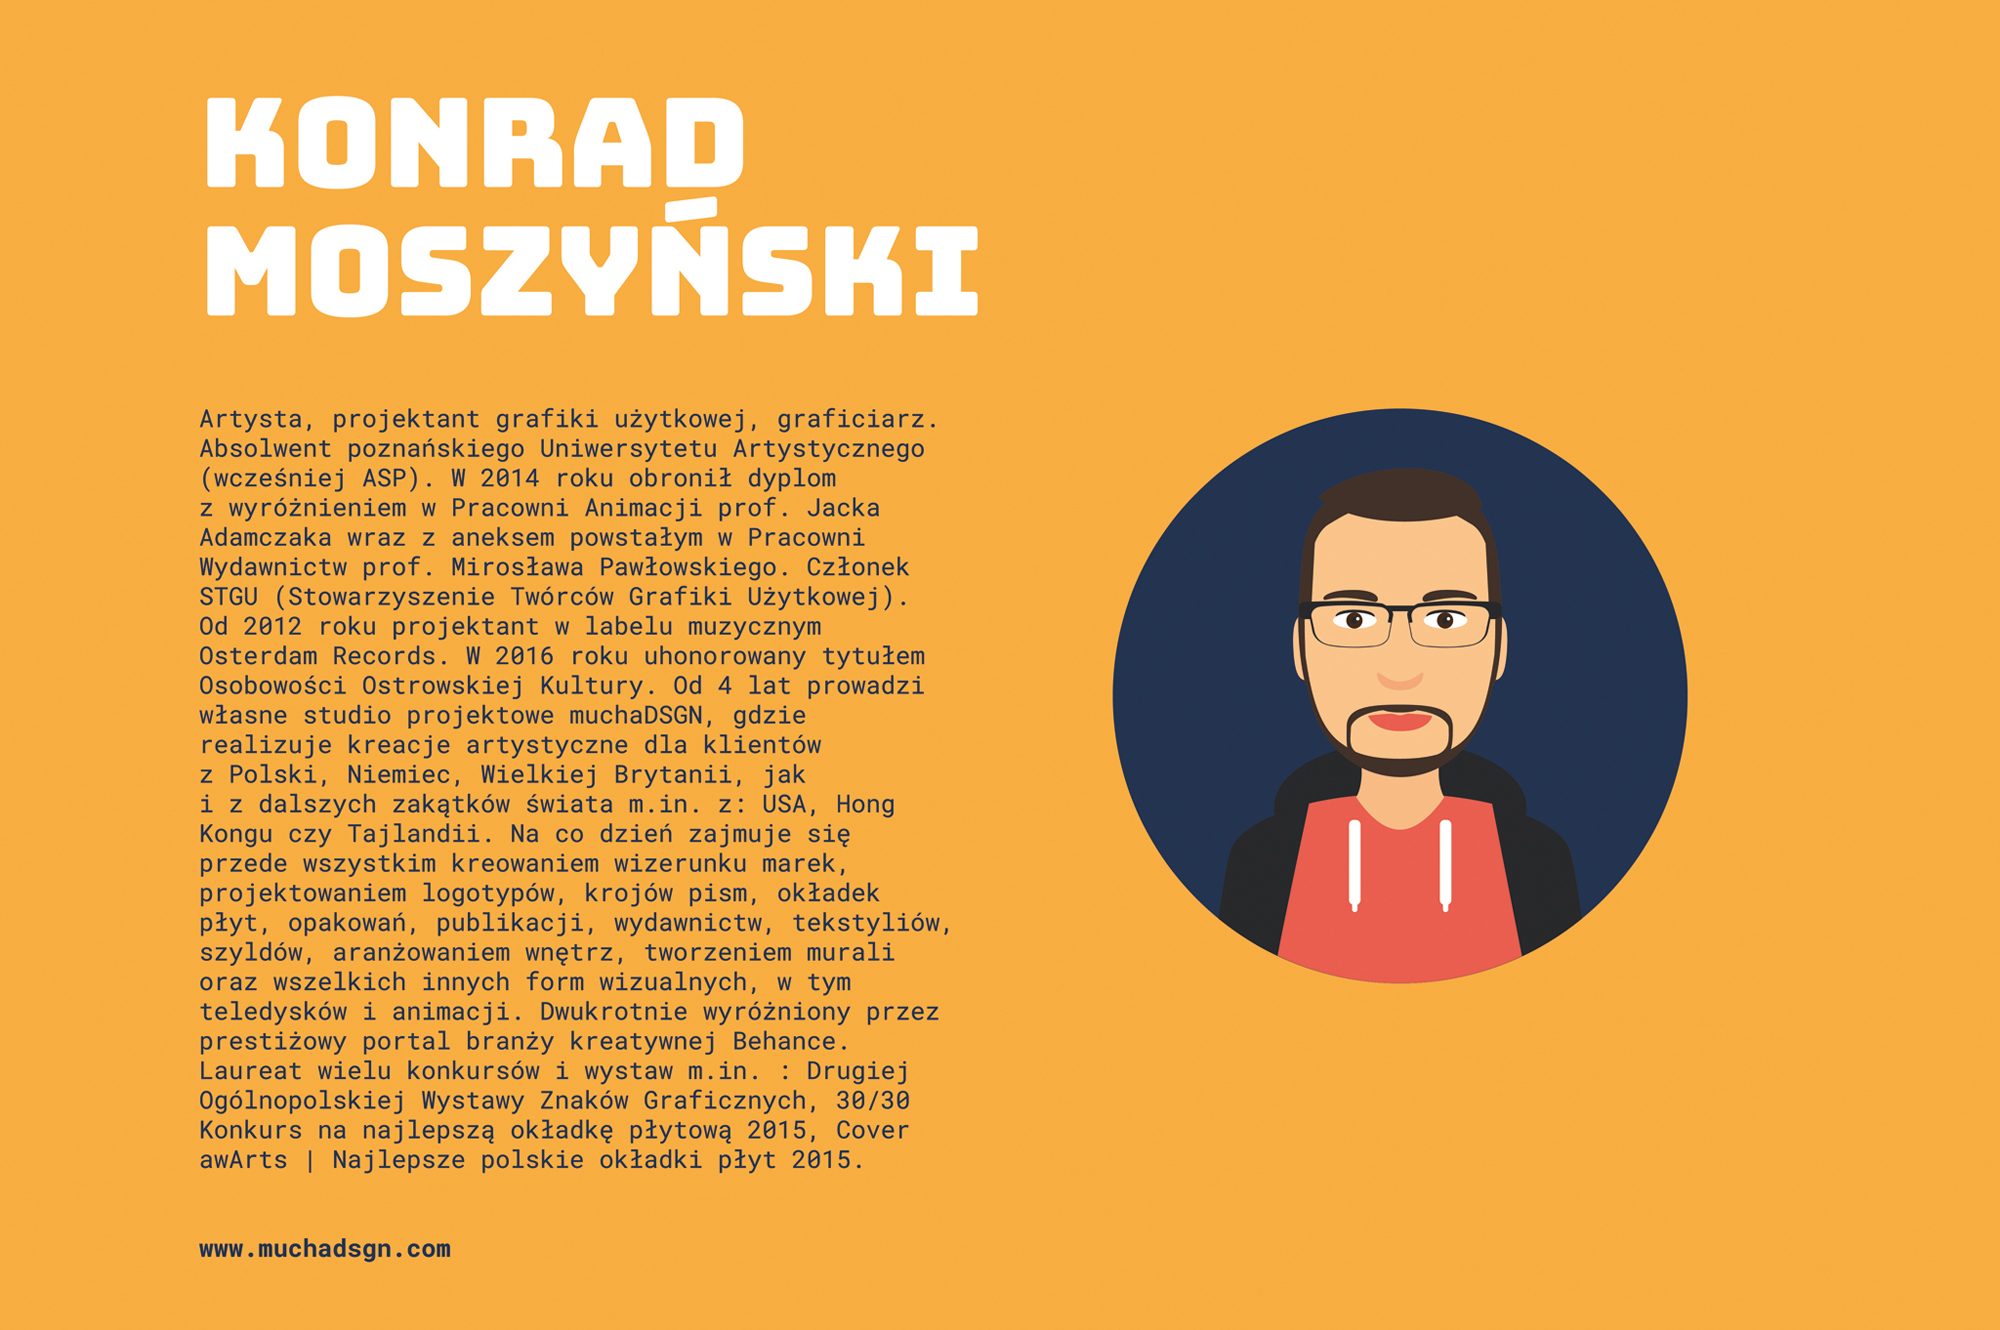 Bio - Konrad Moszyński